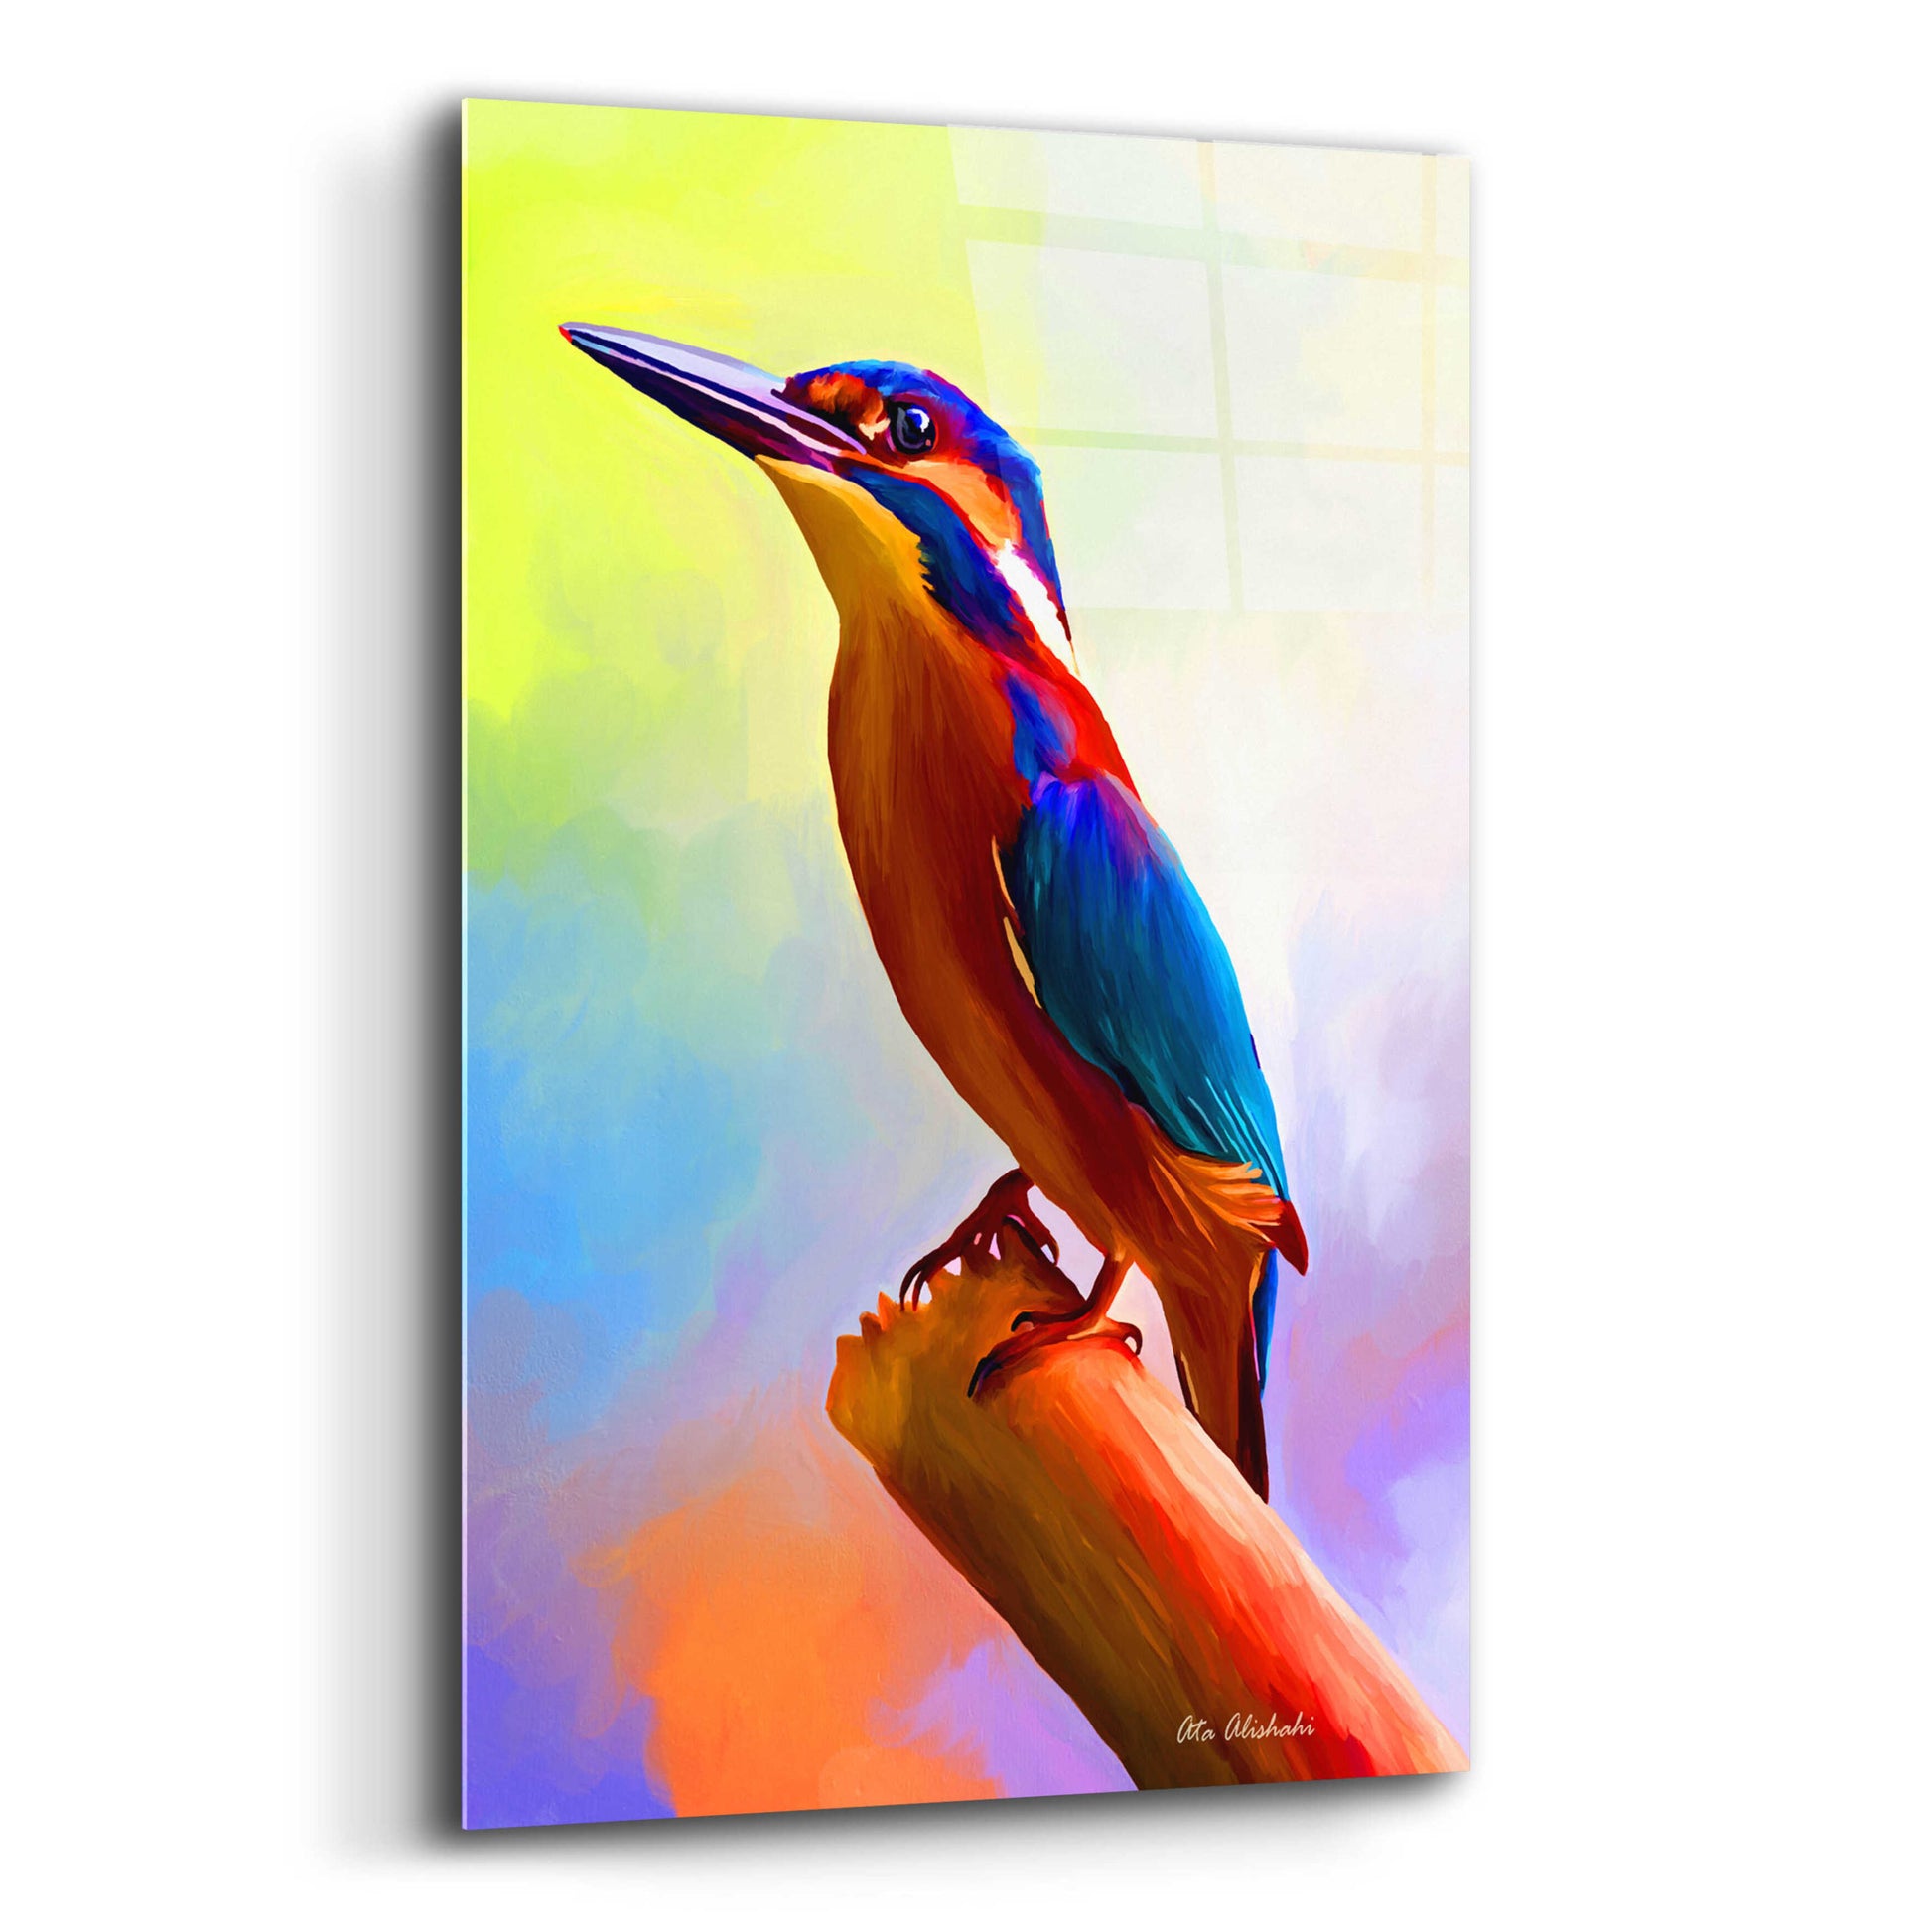 Epic Art 'Tiny Bird' by Ata Alishahi, Acrylic Glass Wall Art,12x16